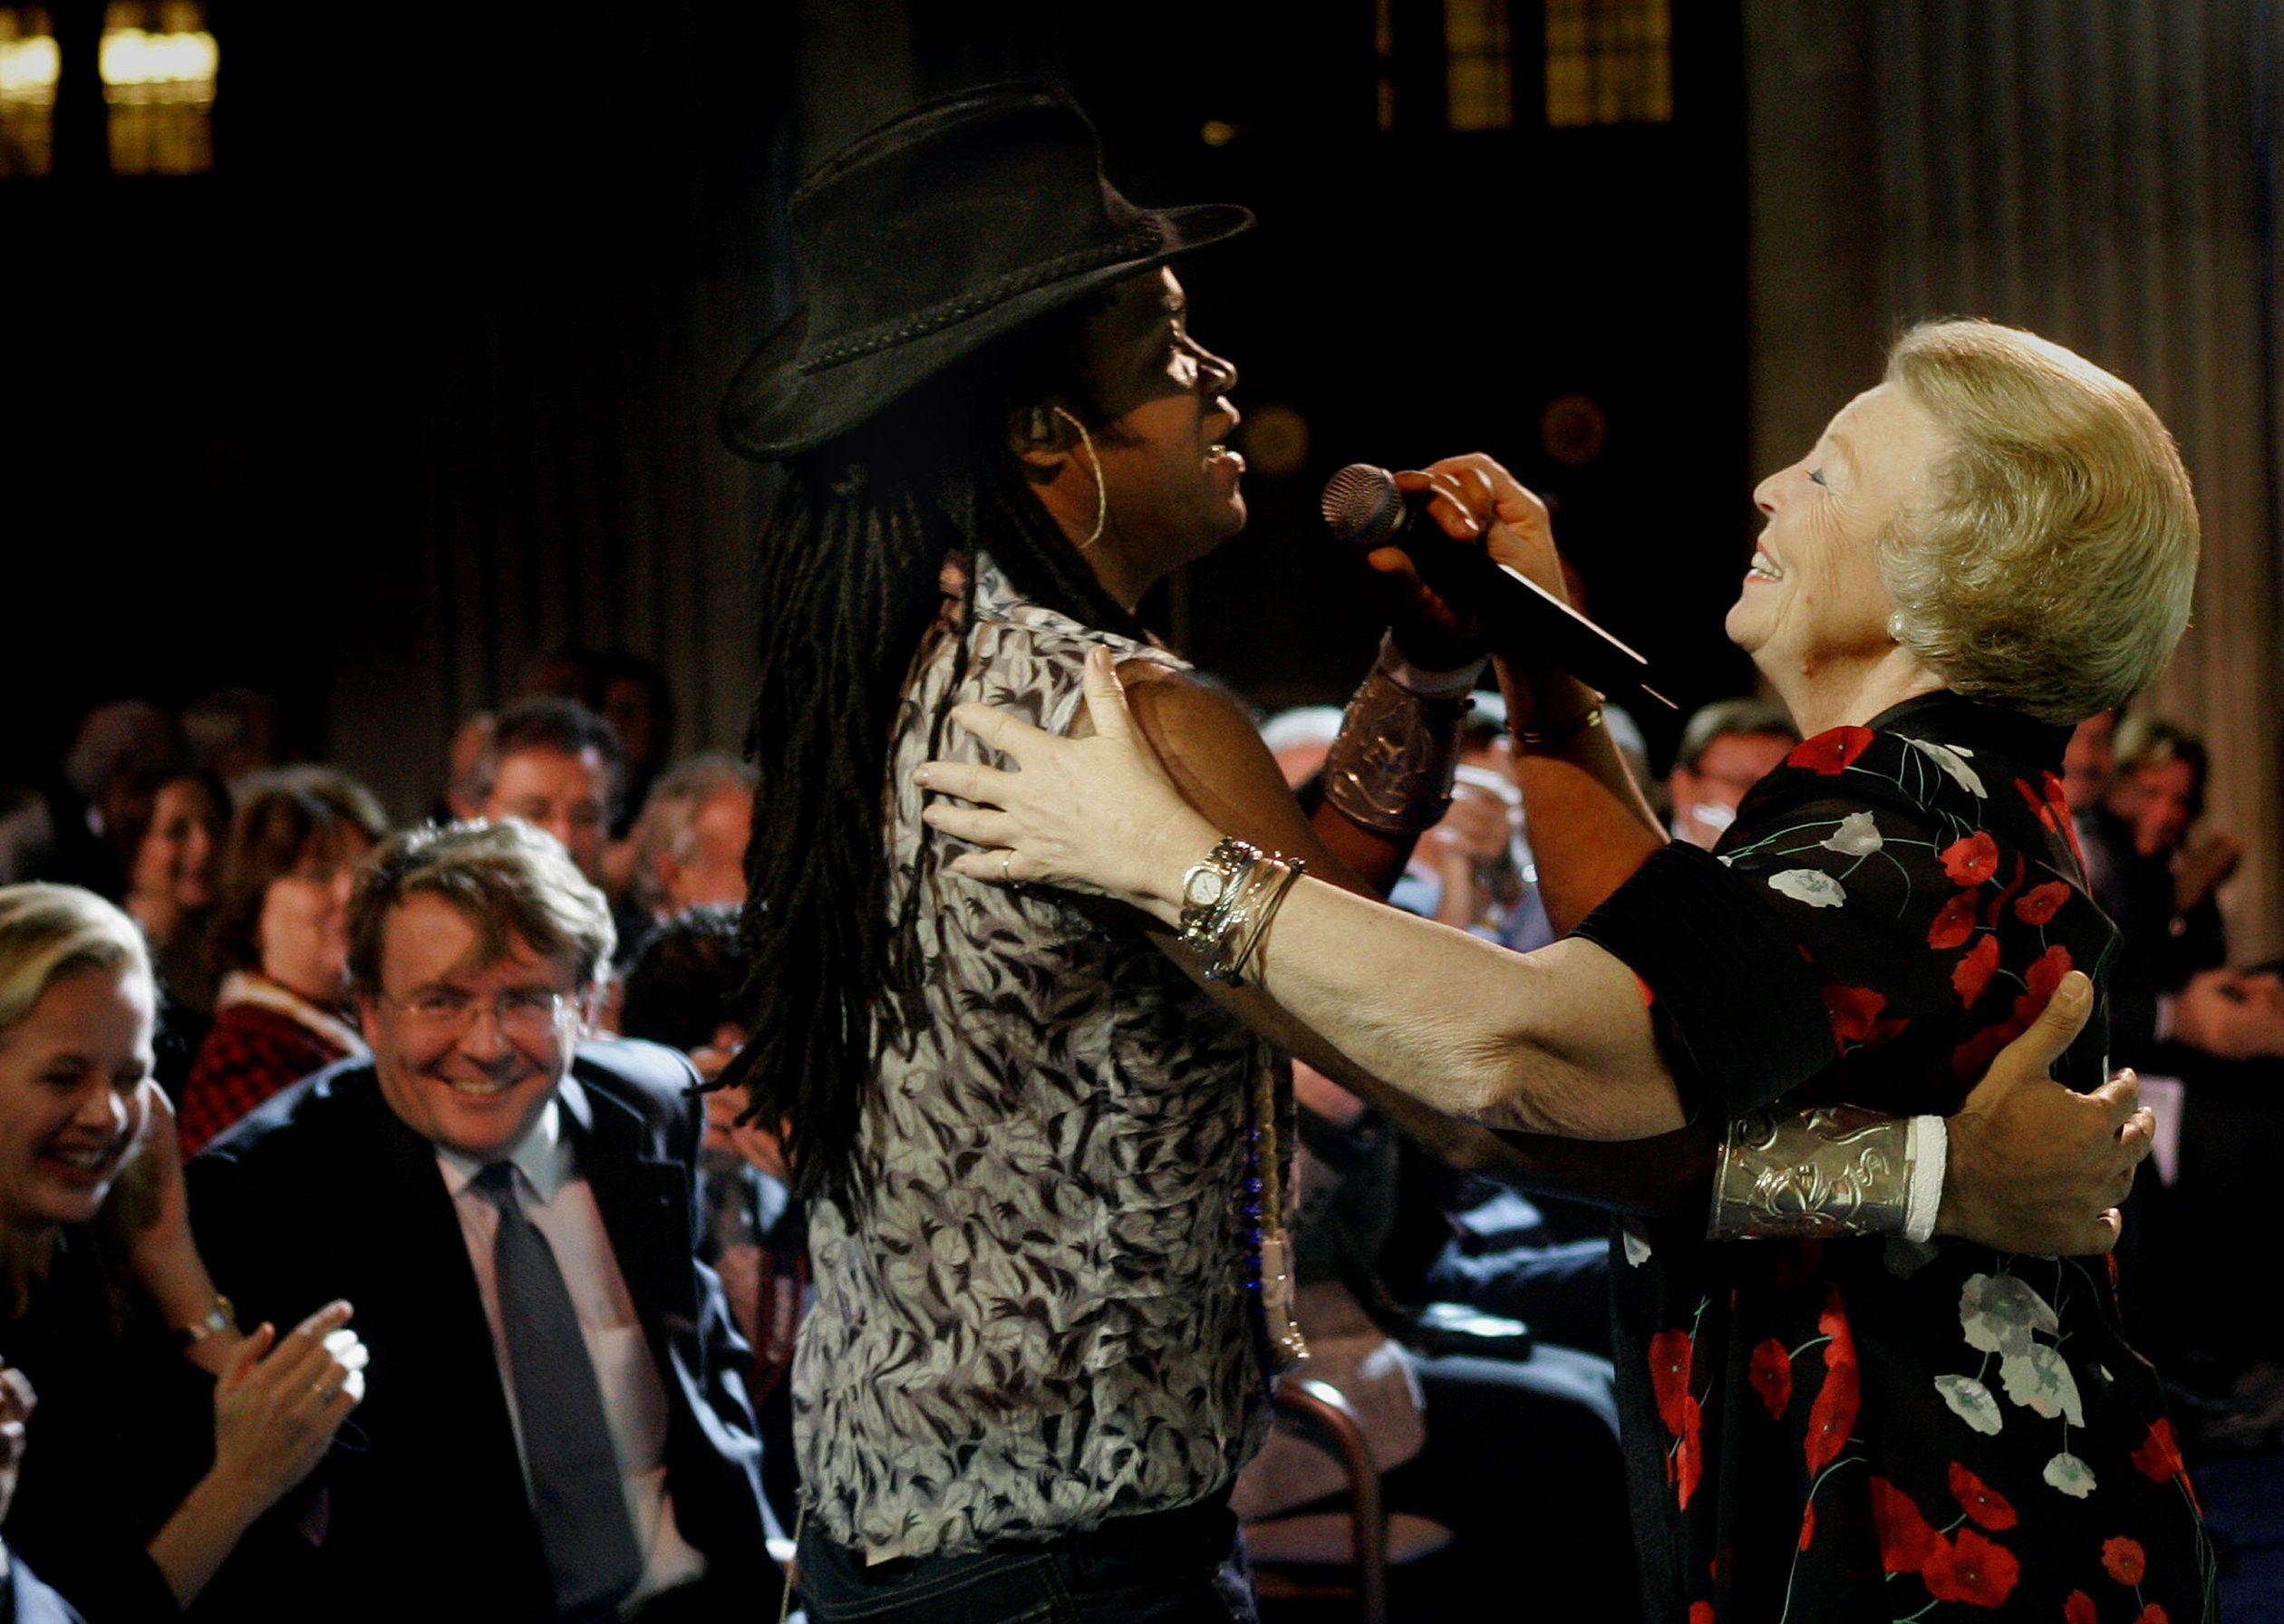 Beatrix maakt een dansje met zanger Carlinhos Brown, tijdens de uitreiking van de Prins Claus prijs